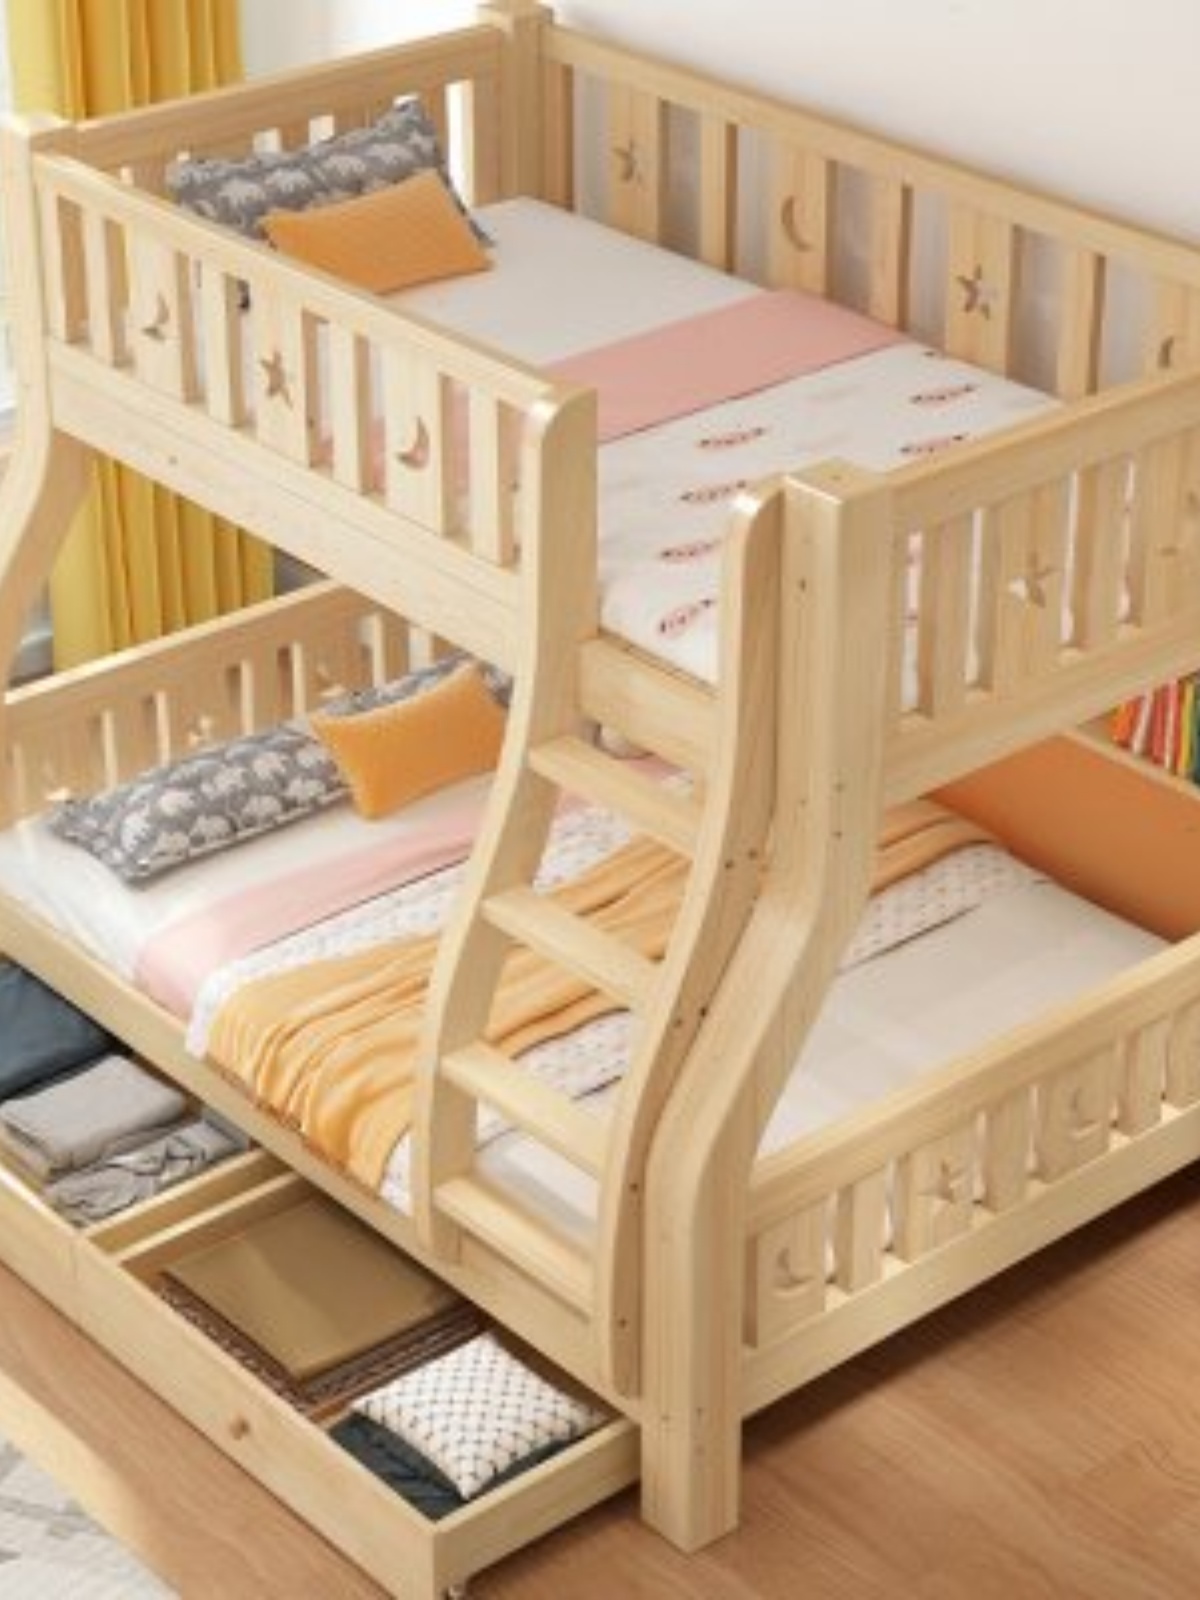 定制实木上下床双层床两层高低床双人床上下铺木床组合床儿童床子